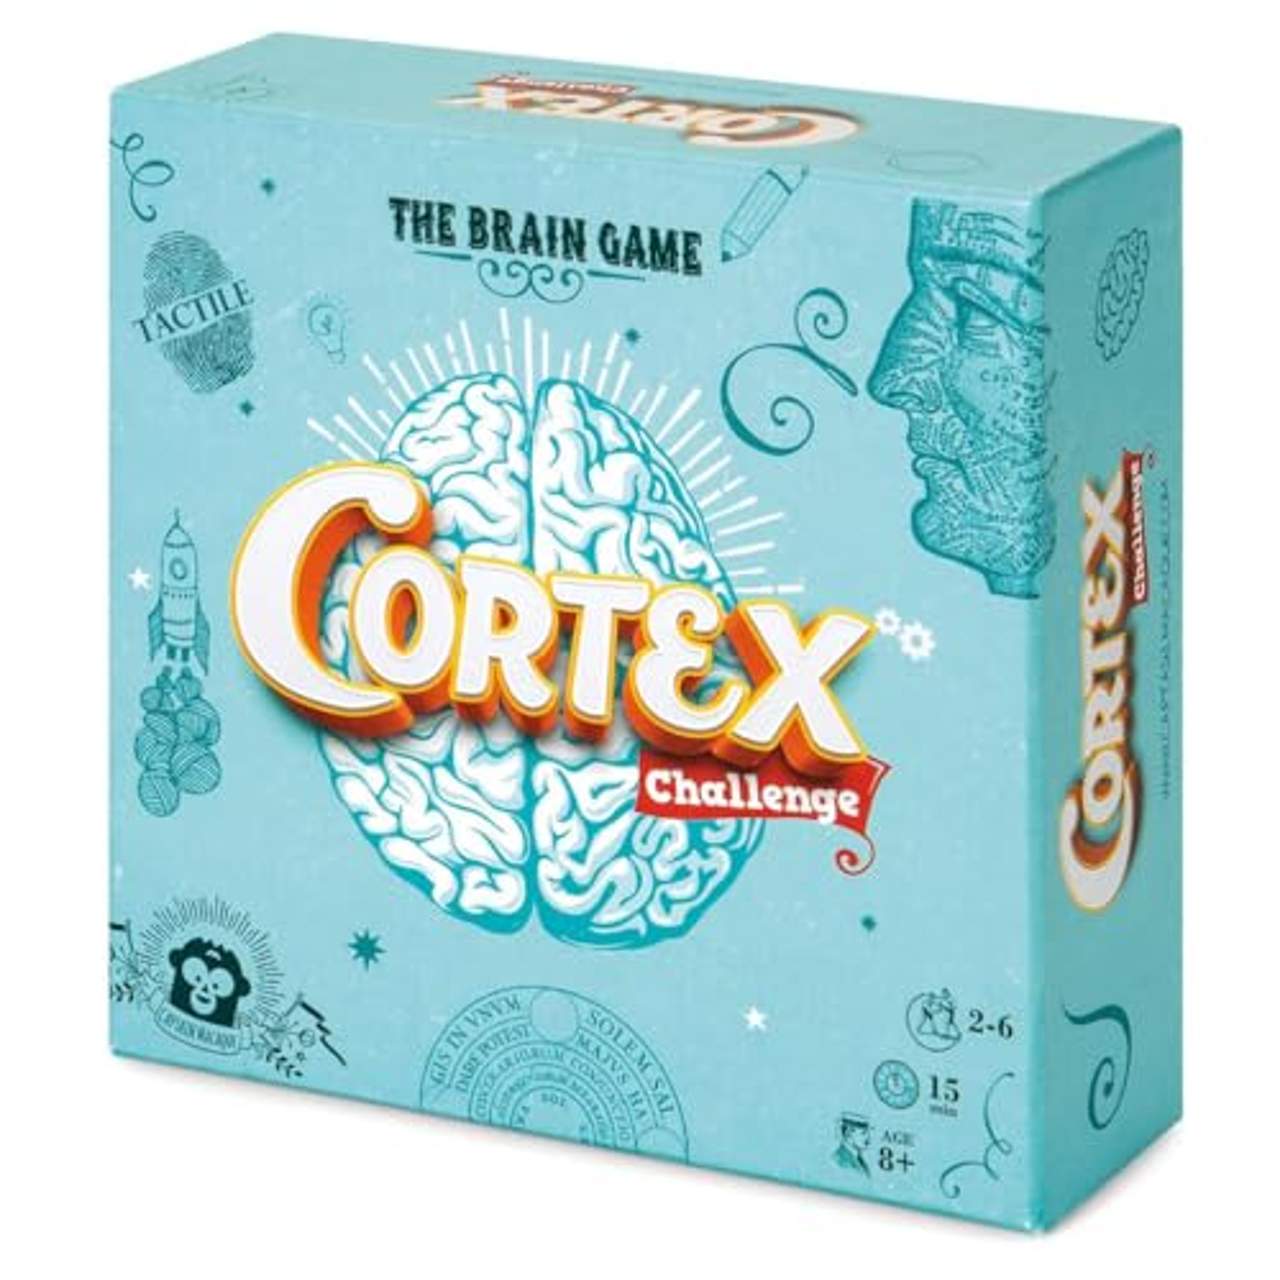 Cortex Challenge Test